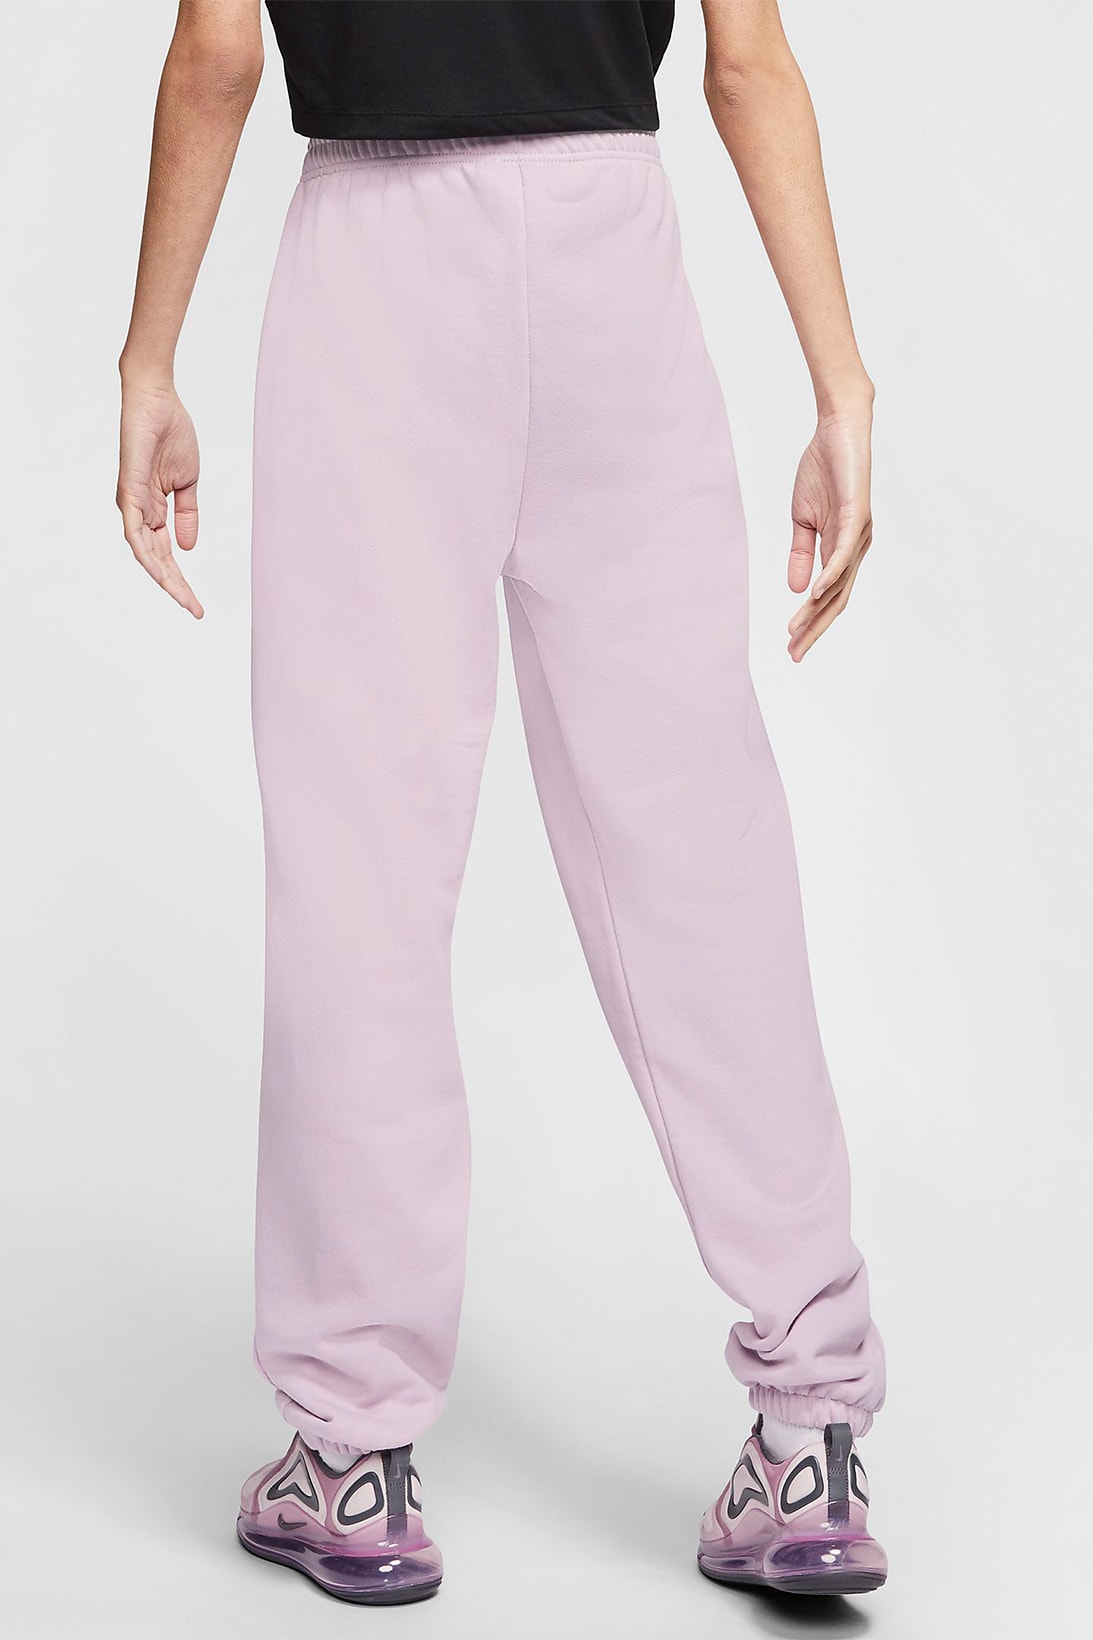 nike sportswear womens sweatpants trousers pastel purple pink green